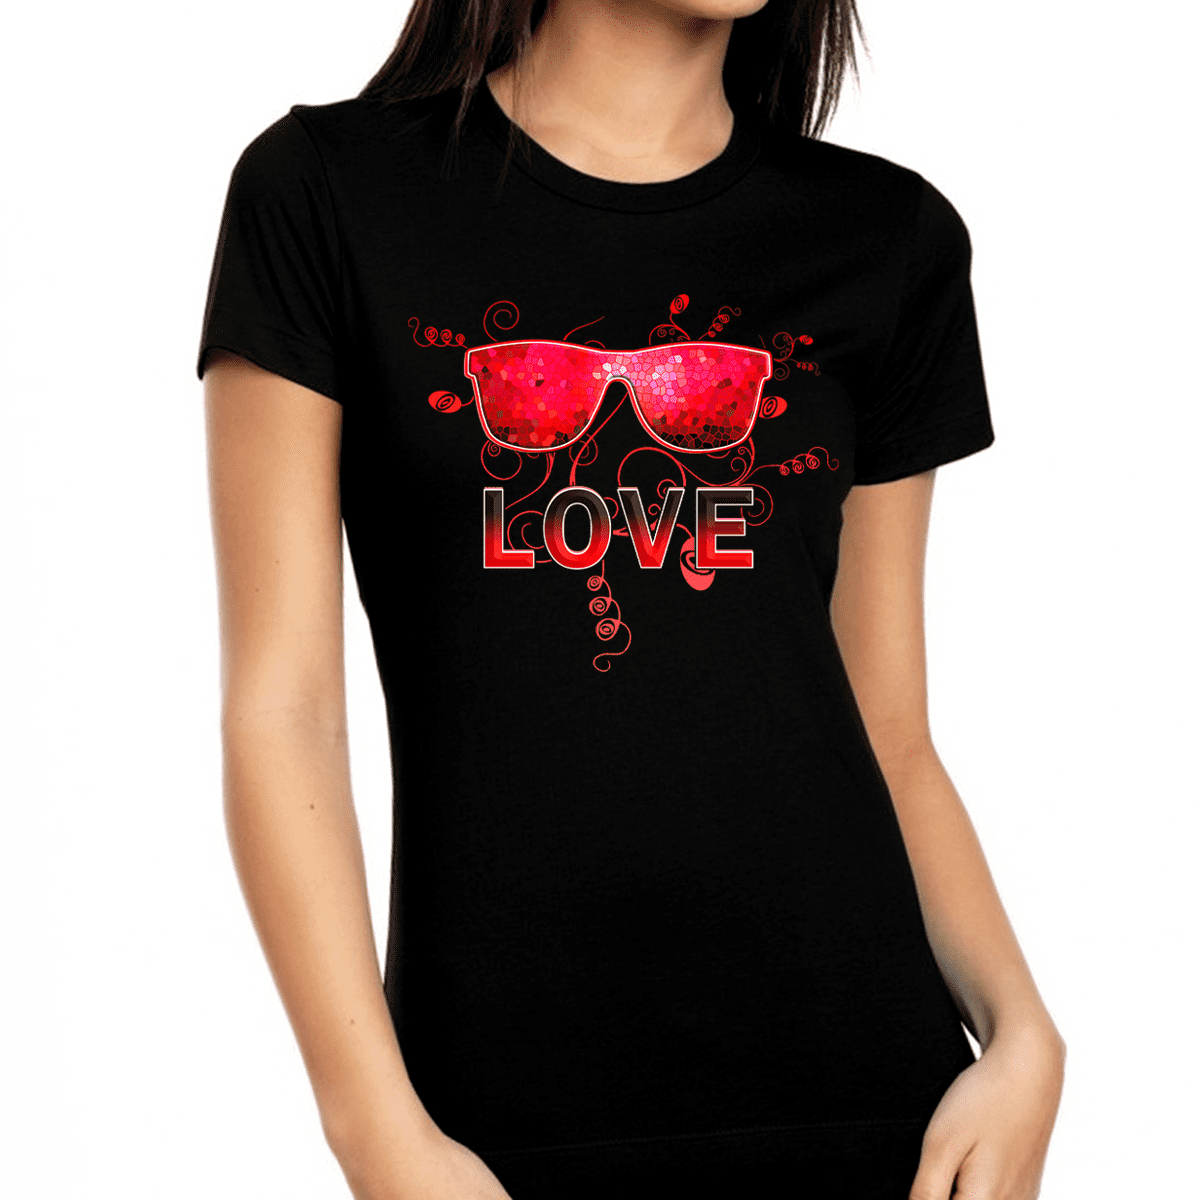 Red Tie Top Women's Valentine's Day Tshirt Top Tri-Blend Vneck Tshirt Valentine Graphic Tee Valentine Shirt